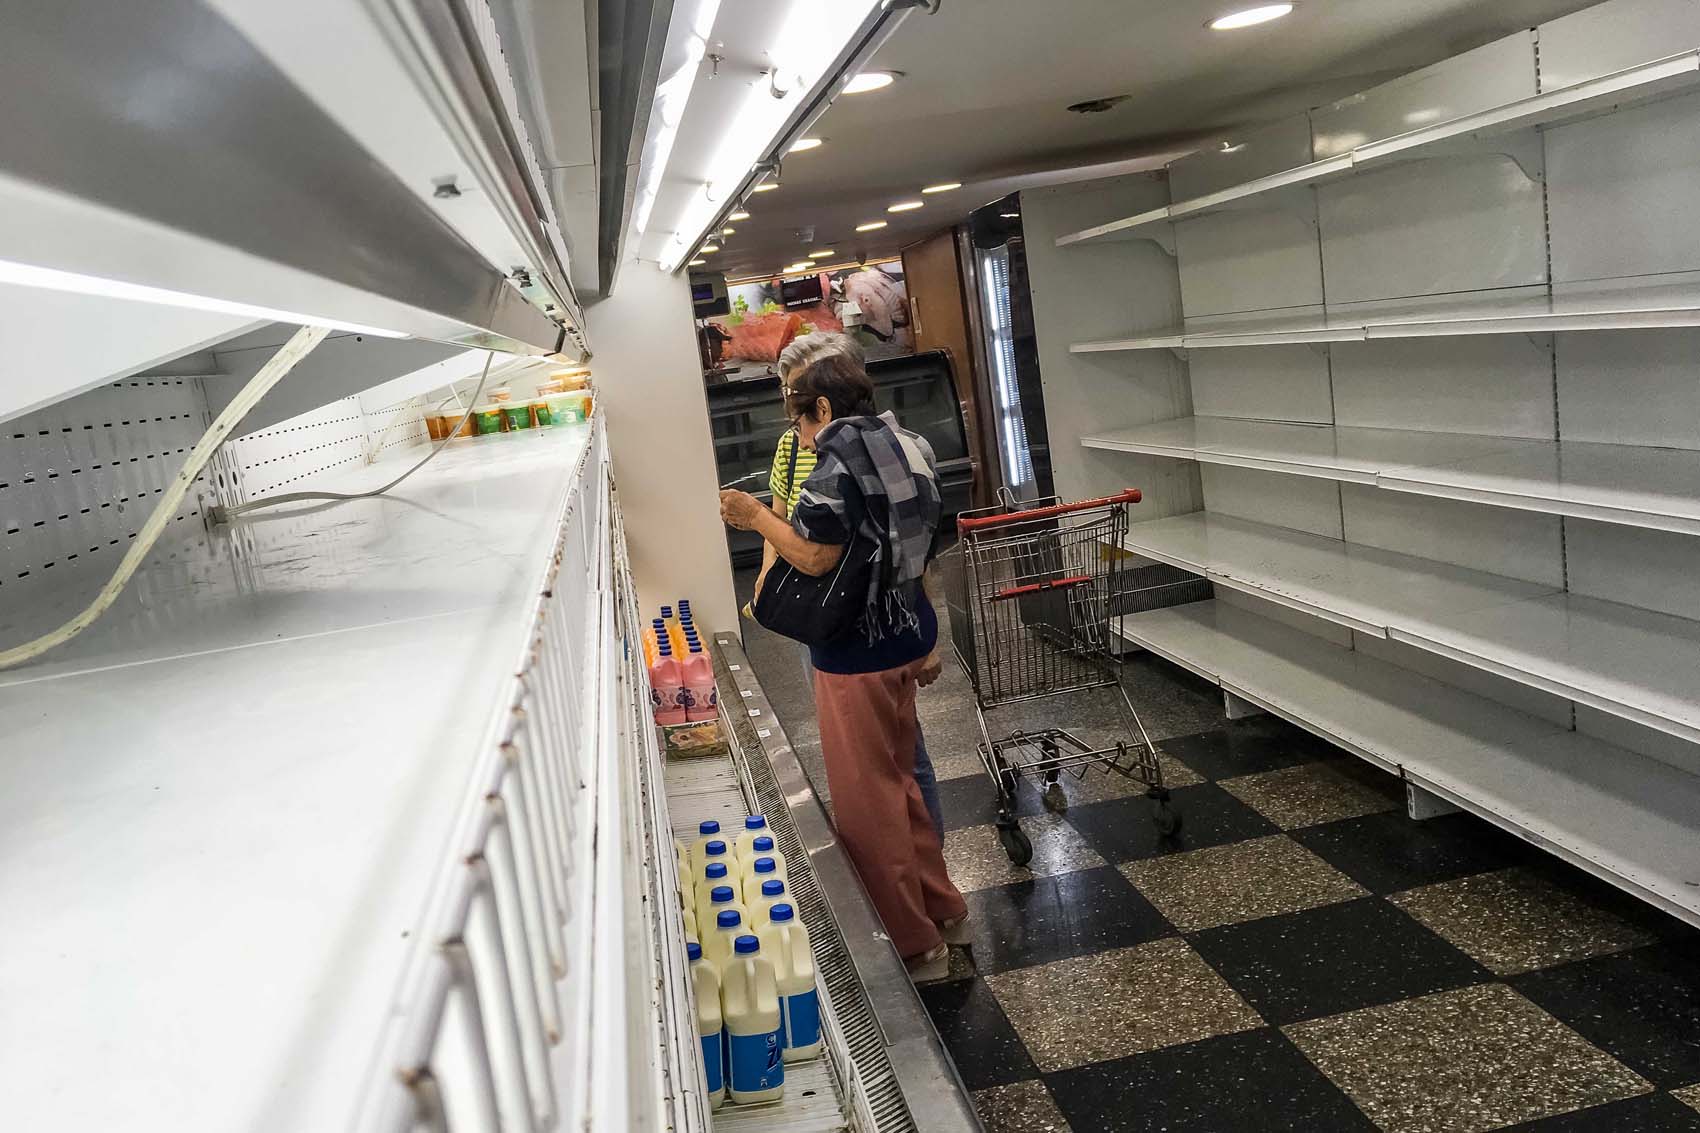 El 30.5% de los venezolanos sólo come una vez al día, según encuesta